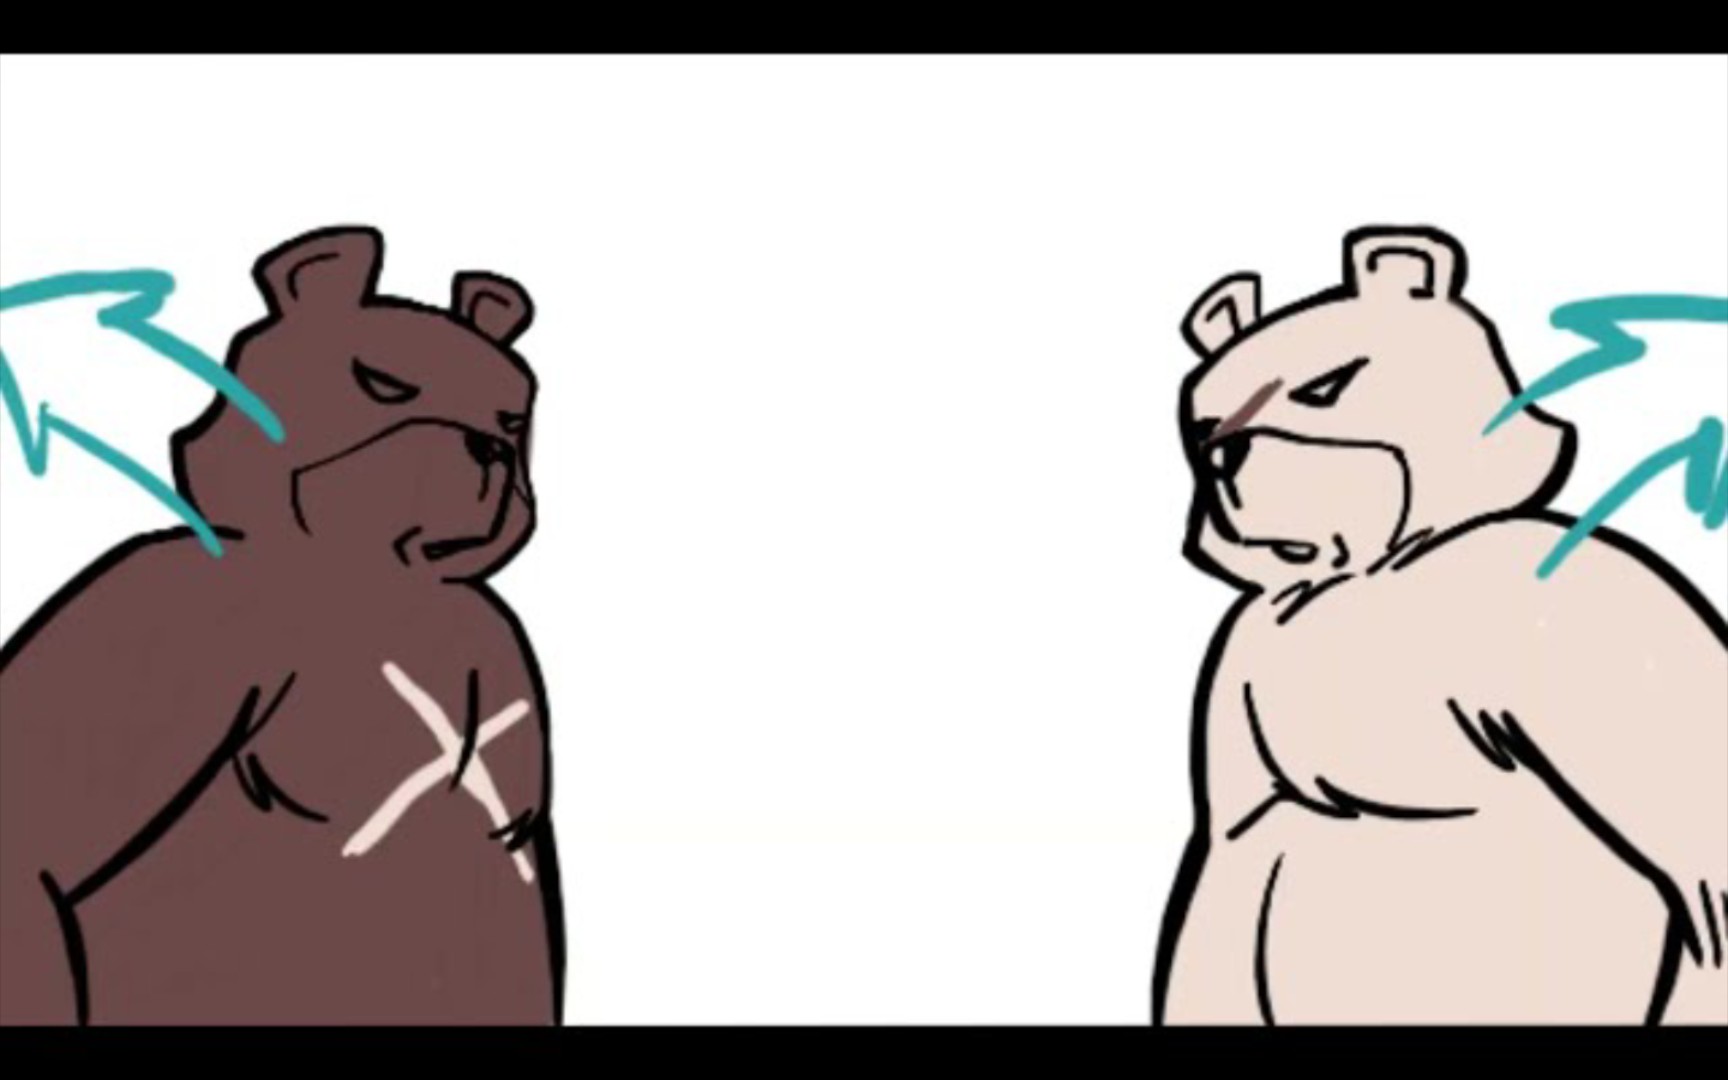 甲龙vs短面熊图片